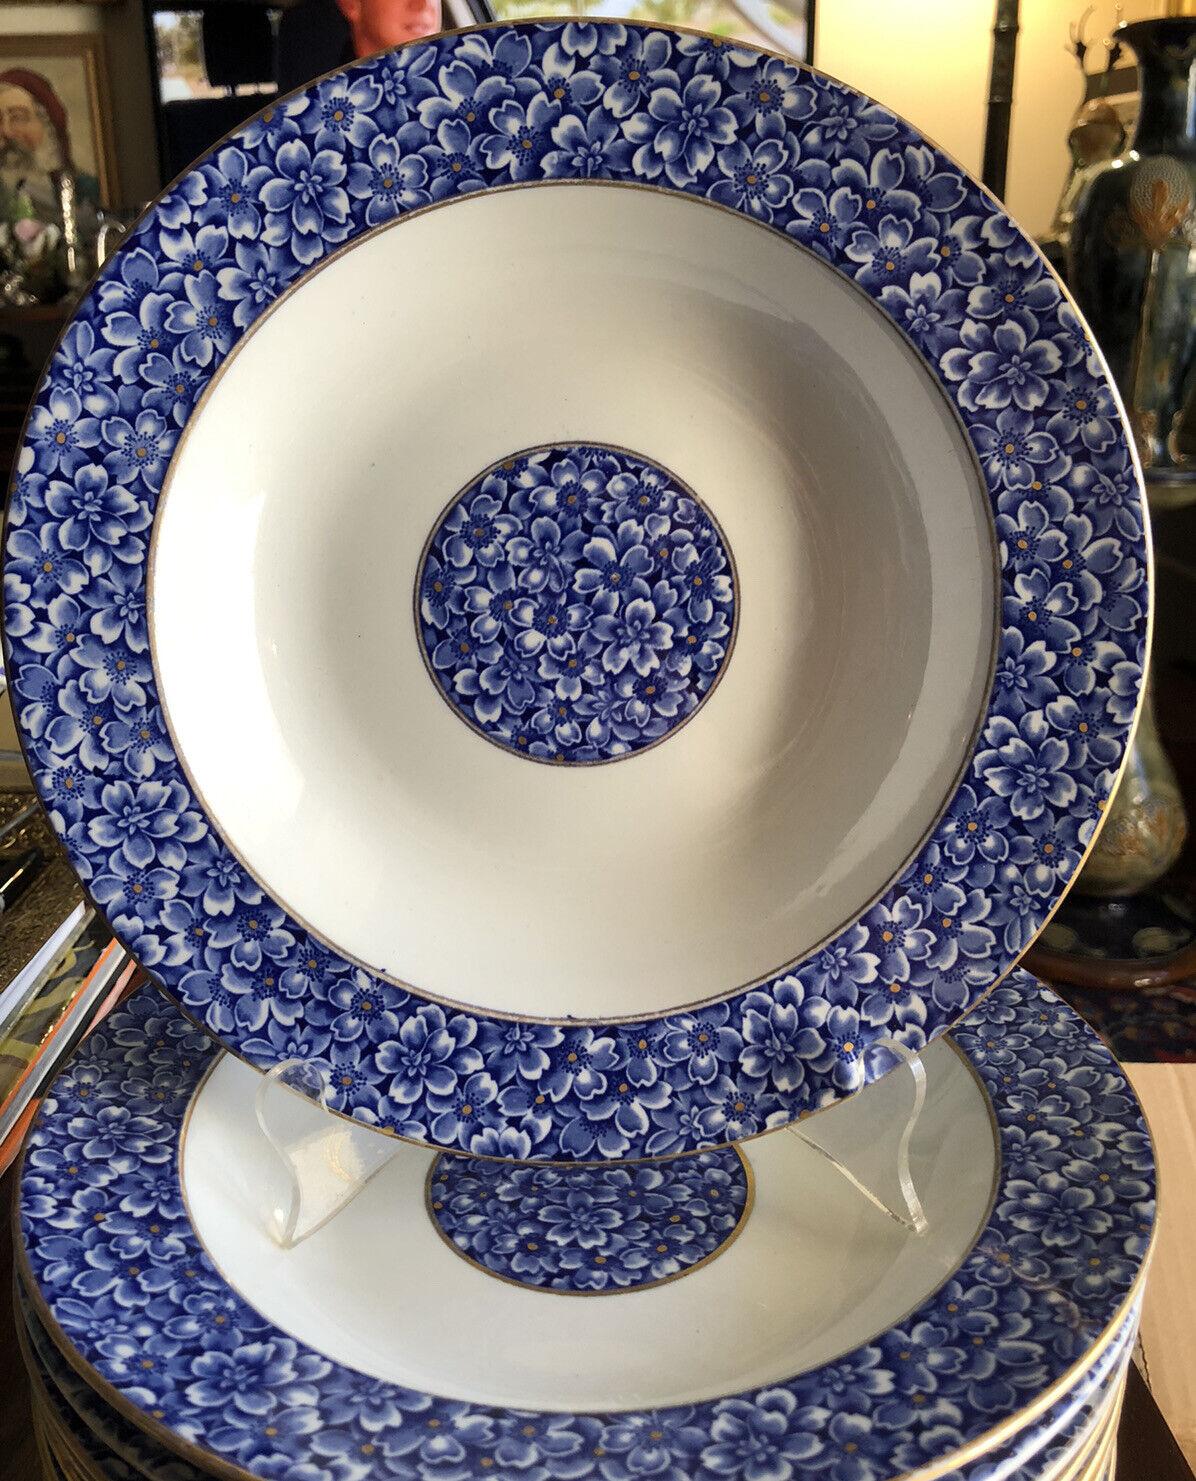 Royal Worcester (anglais, 1751-2008) pour Tiffany & Company (américain, fondé en 1837). Vers 1877. Un ensemble de 10 bols à soupe ou à salade avec un magnifique motif floral bleu au centre du bol et sur le bord. Le dessous porte la marque